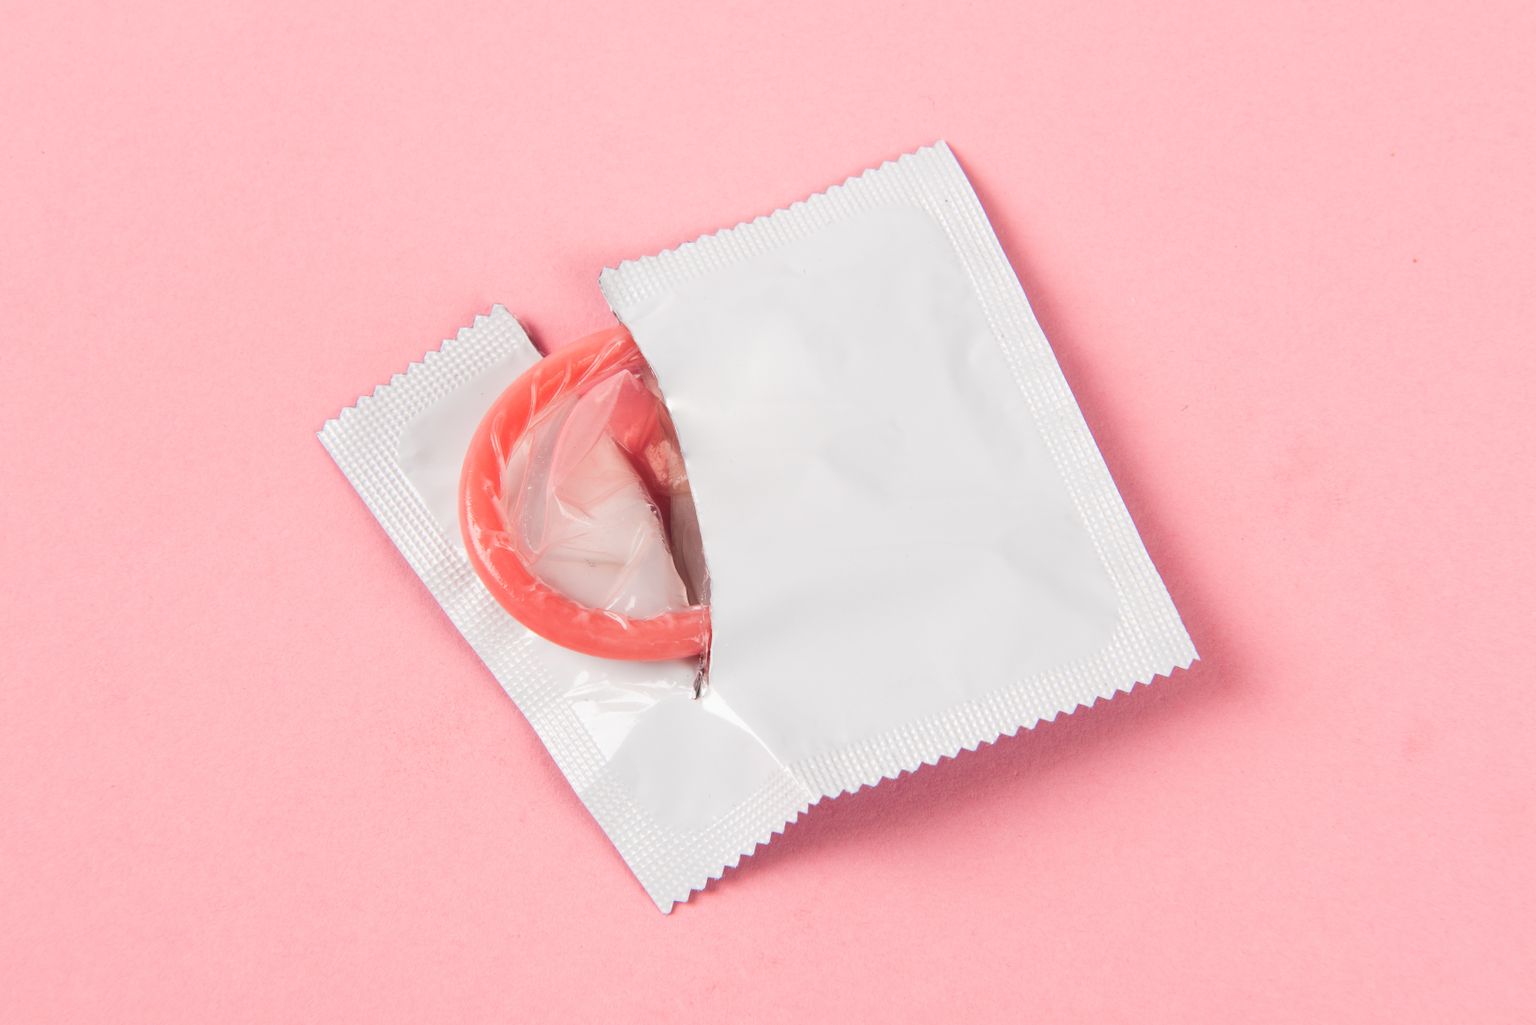 Seksuaalvahekorras olnud noorte hulgas on kondoomi kasutamine vähenenud.